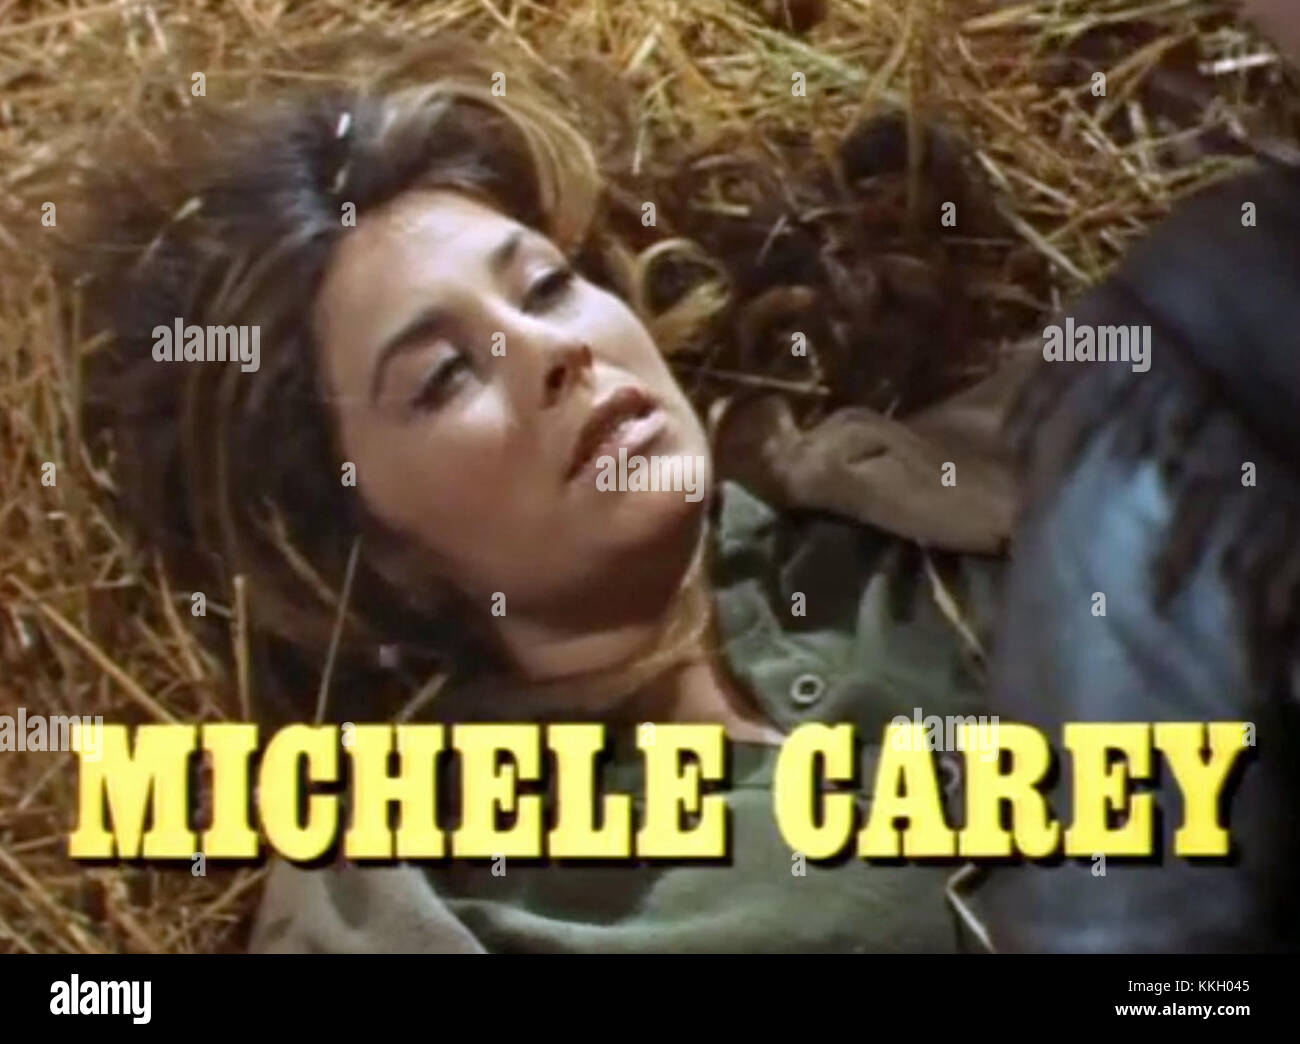 Michele carey hot